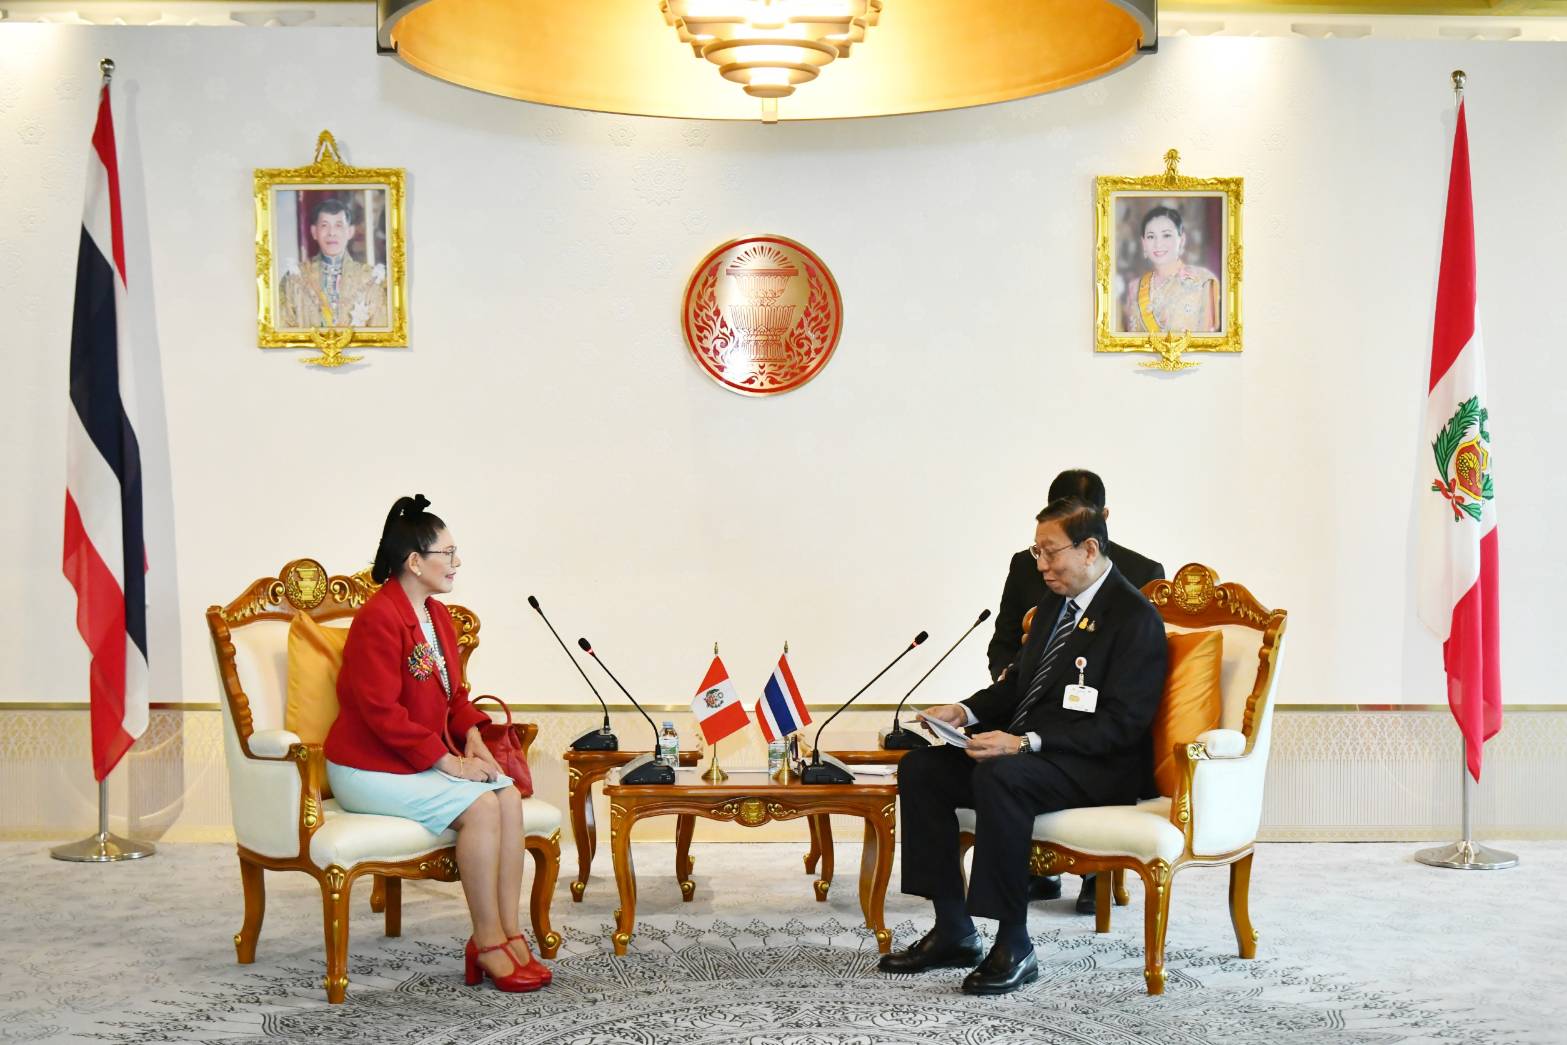 นางสาวเซซิเลีย ซูนิลดา กาลาร์เรตา บาซัน  (H.E. Ms. Cecilia Zunilda Galarreta Bazán)  เอกอัครราชทูตสาธารณรัฐเปรูประจำประเทศไทย  เข้าเยี่ยมคารวะประธานวุฒิสภา  ในวันพฤหัสบดีที่ ๒ พฤศจิกายน ๒๕๖๖